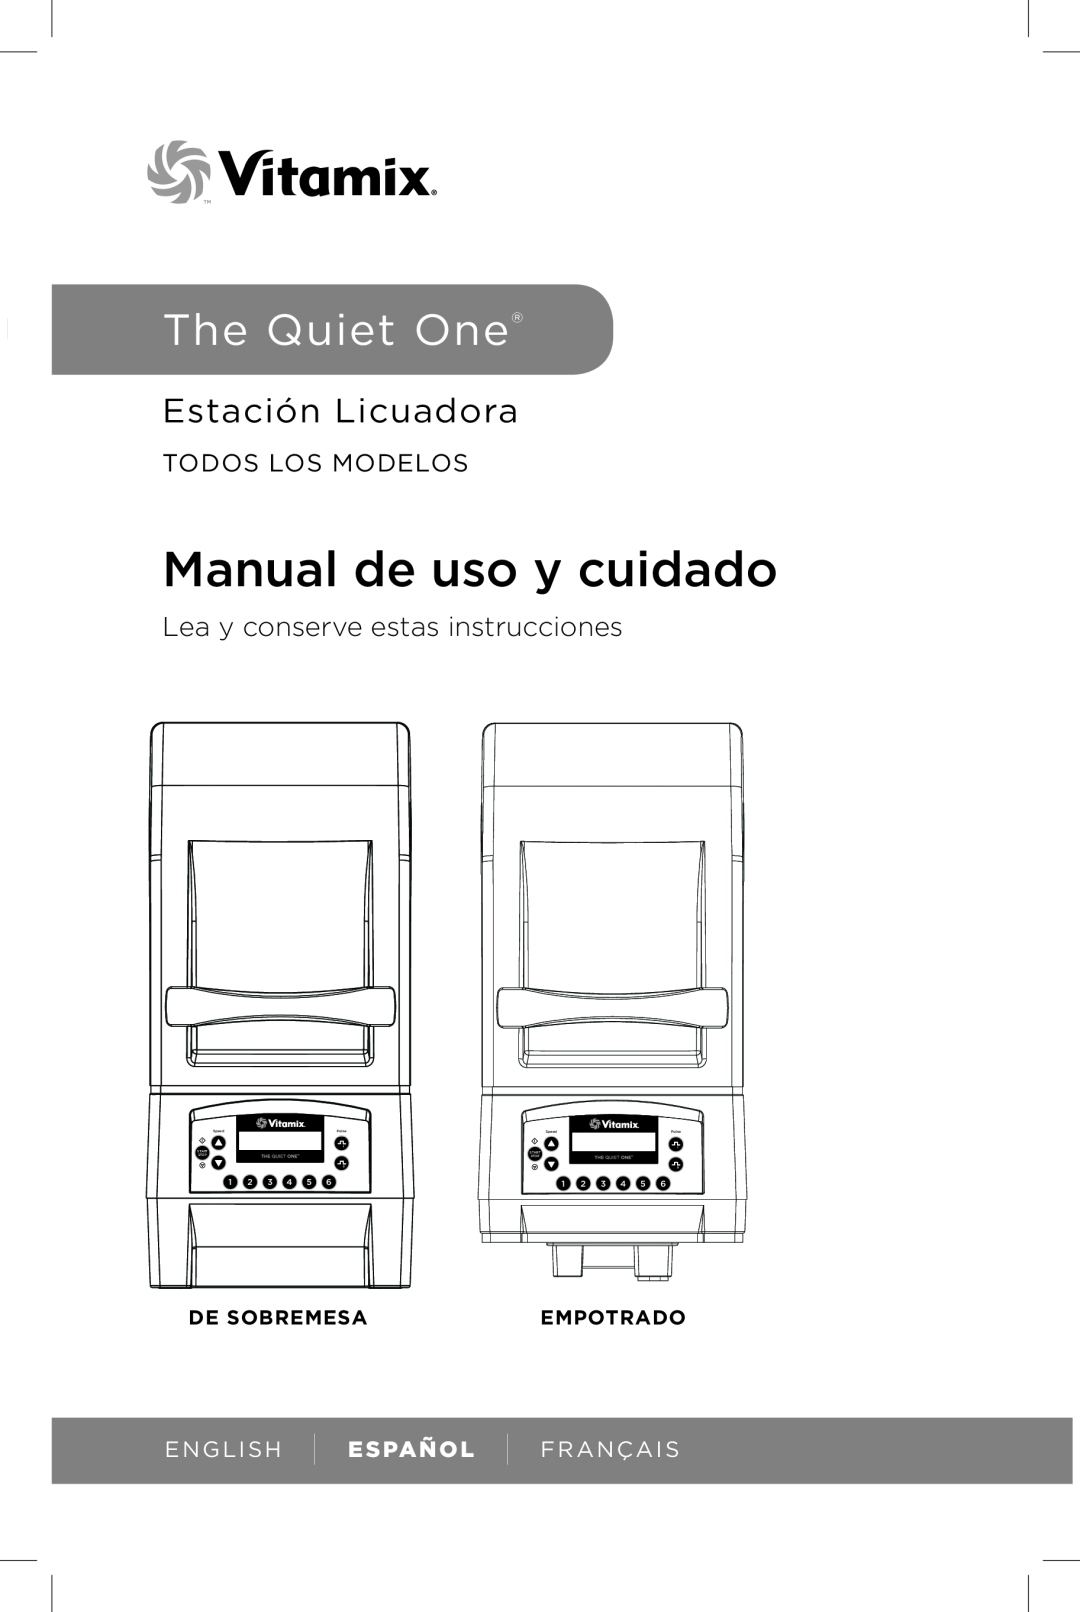 Vita-Mix The Quiet One Manual de uso y cuidado, Estación Licuadora, Lea y conserve estas instrucciones, Todos Los Modelos 